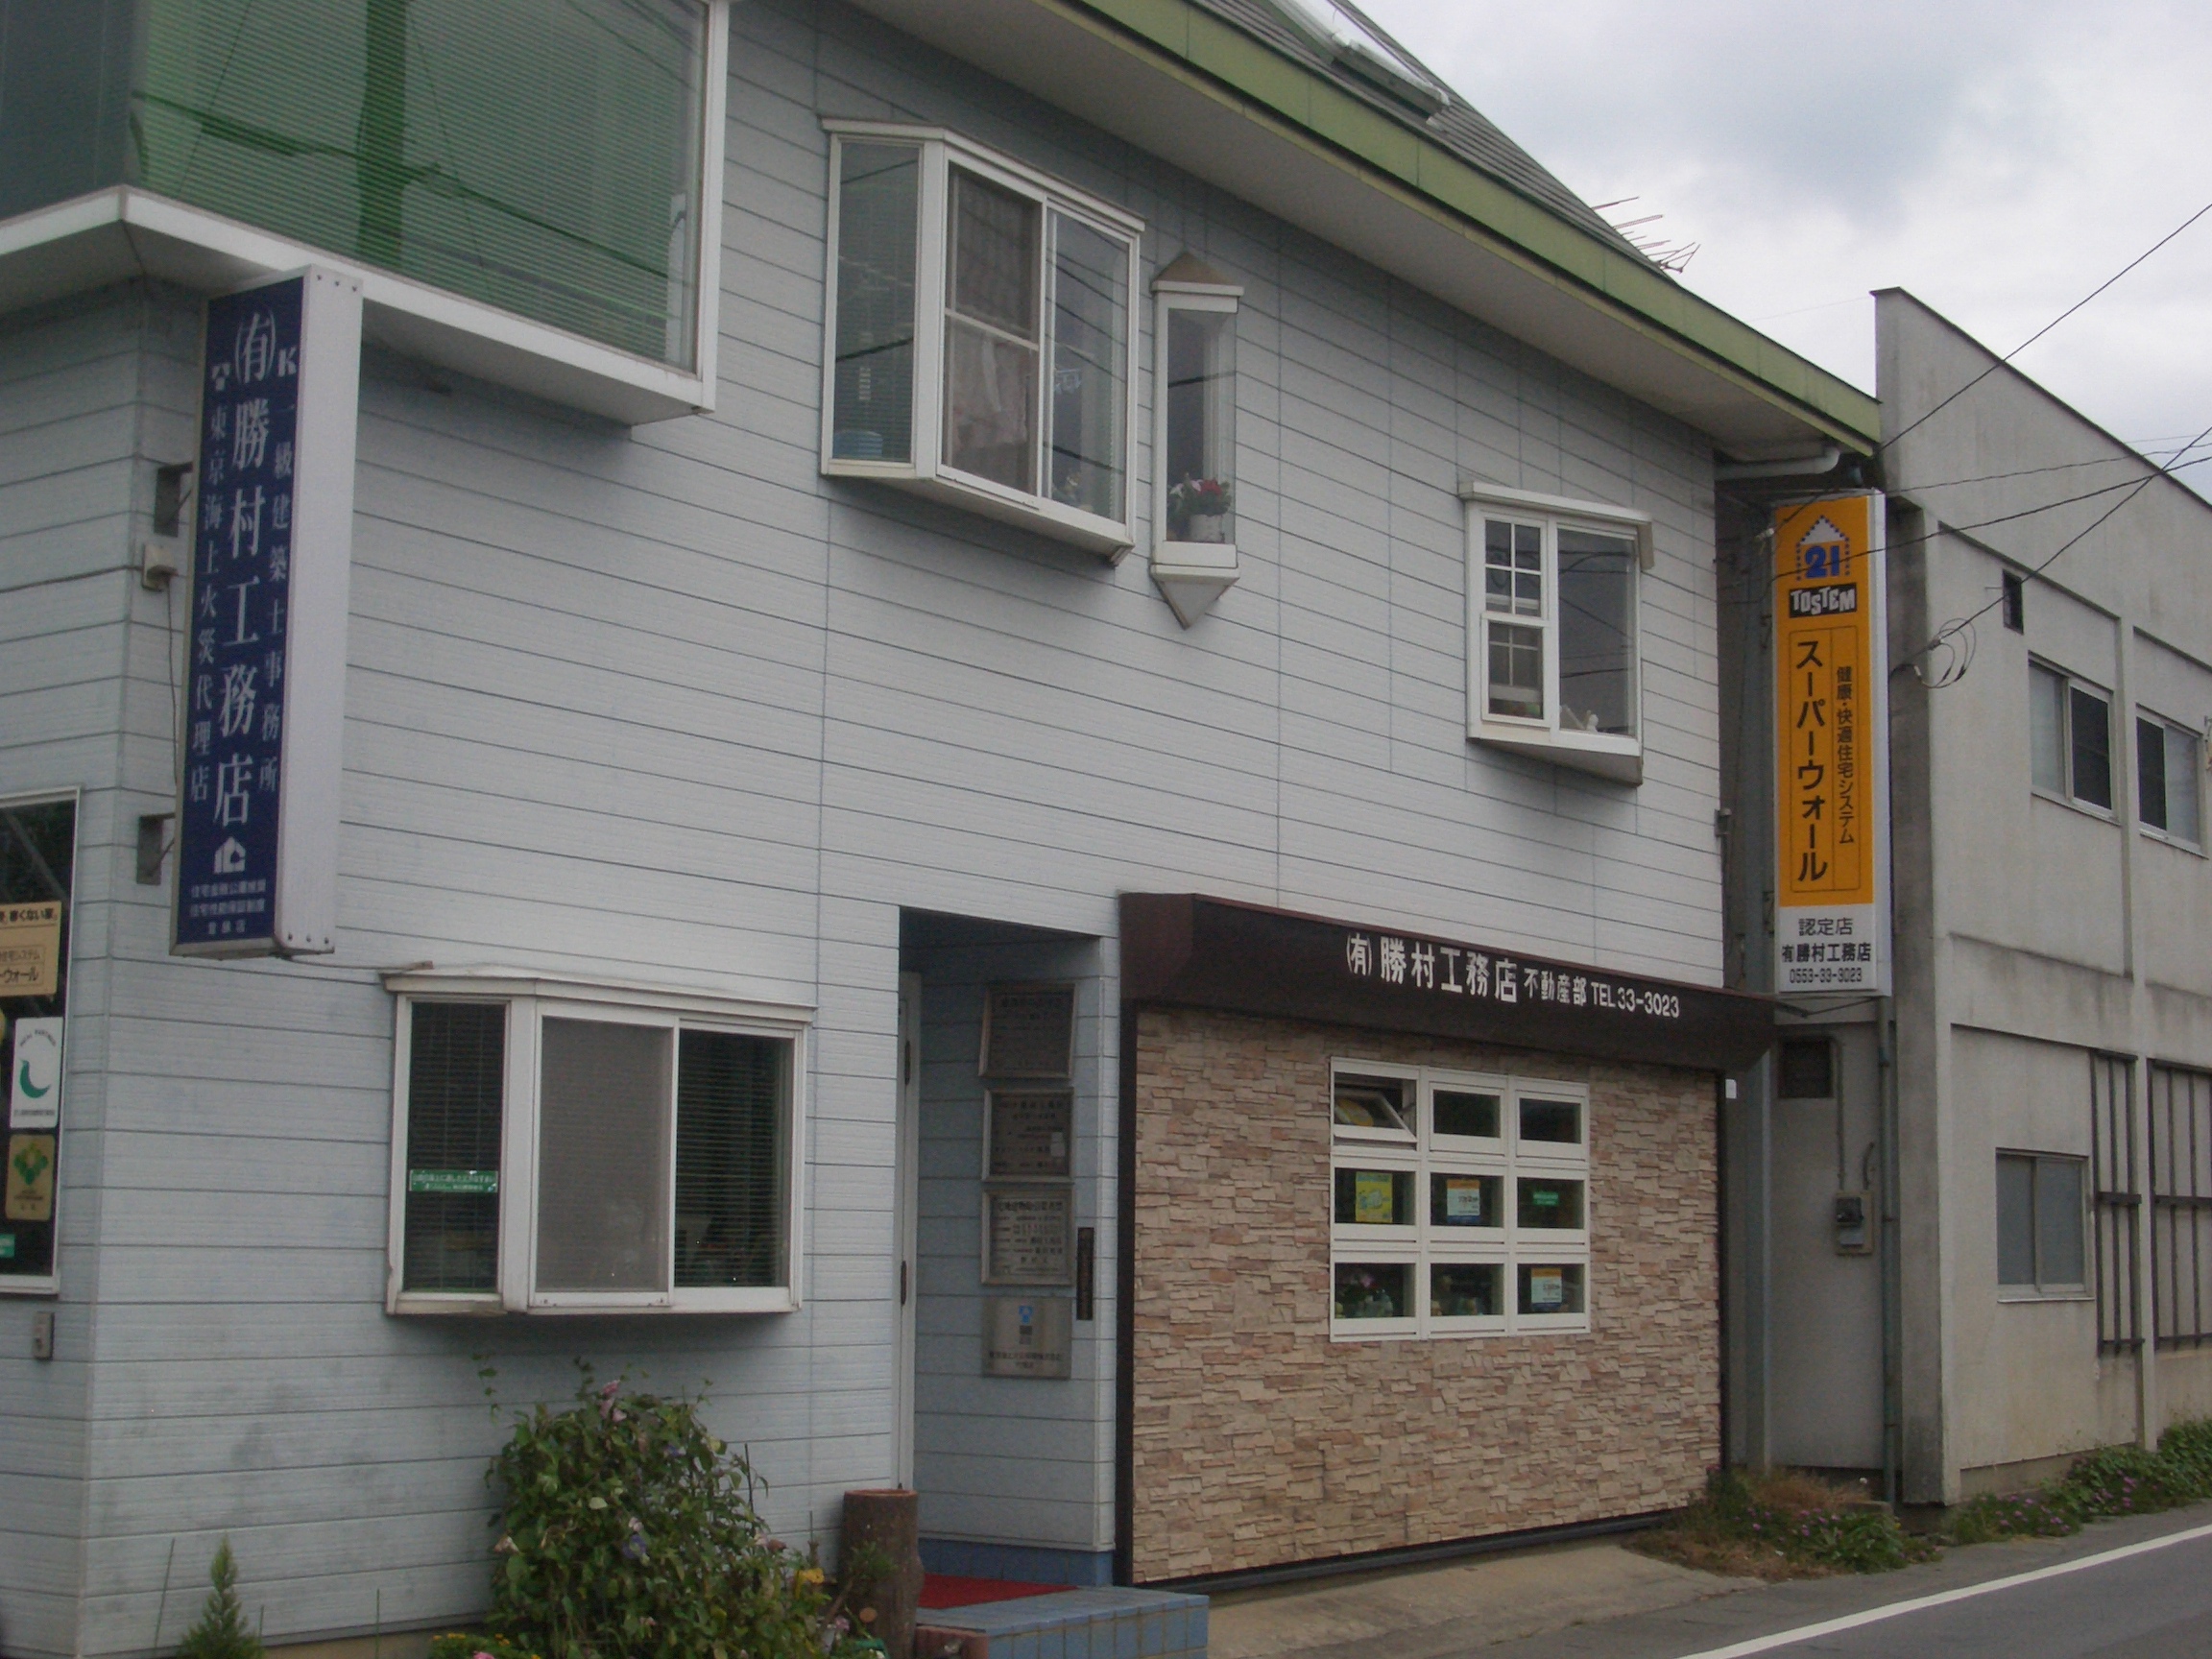 有 勝村工務店 山梨県 甲州市 新築 注文住宅を工務店で建てるなら いい家ネット